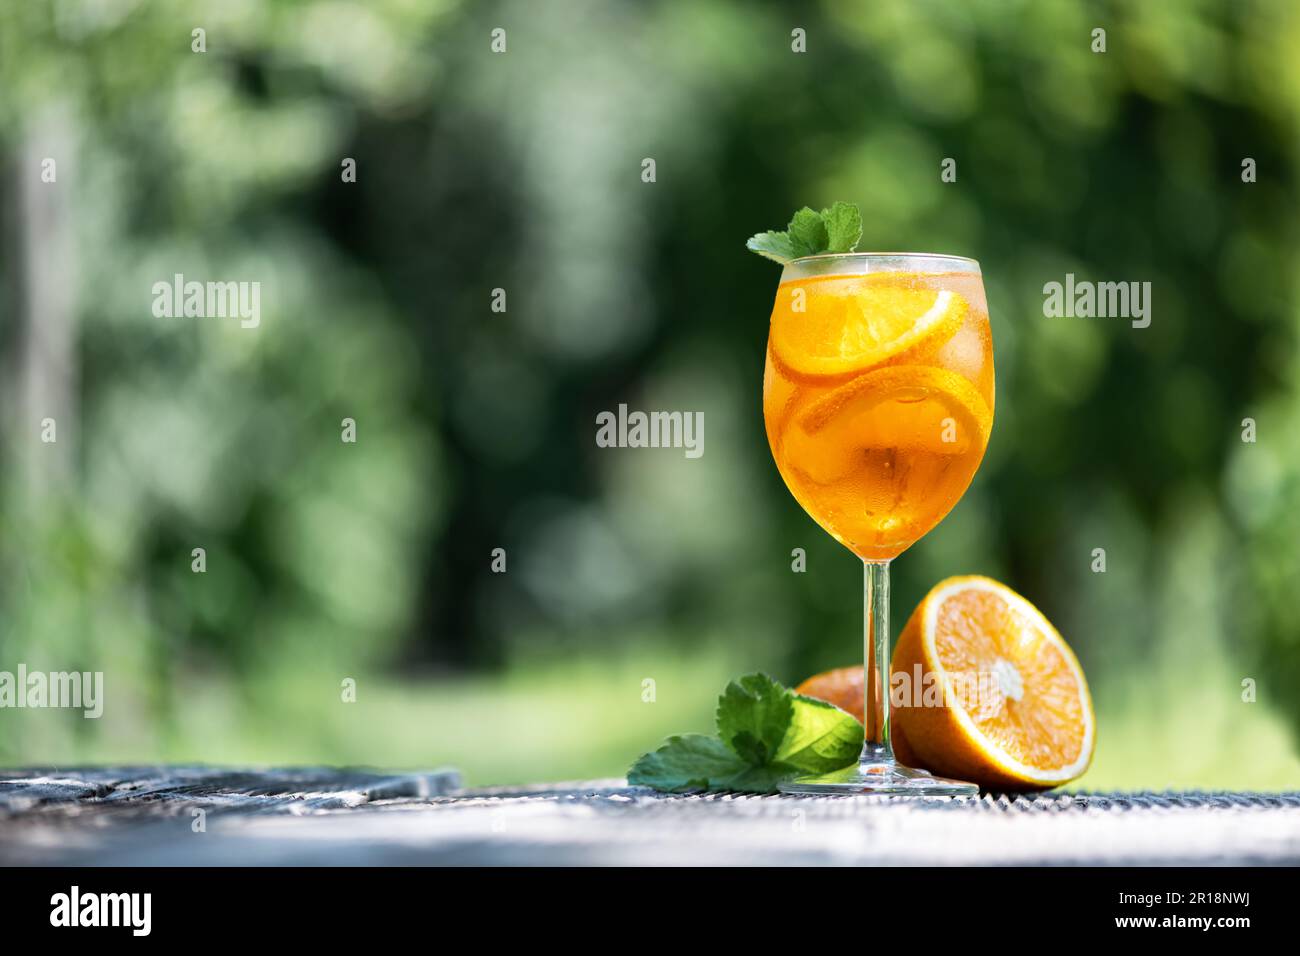 Apéritif Spritz Aperitivo cocktail d'été dans un verre original avec des oranges et une brindille de menthe sur fond de table en bois. Photographie de nourriture et de boissons Banque D'Images